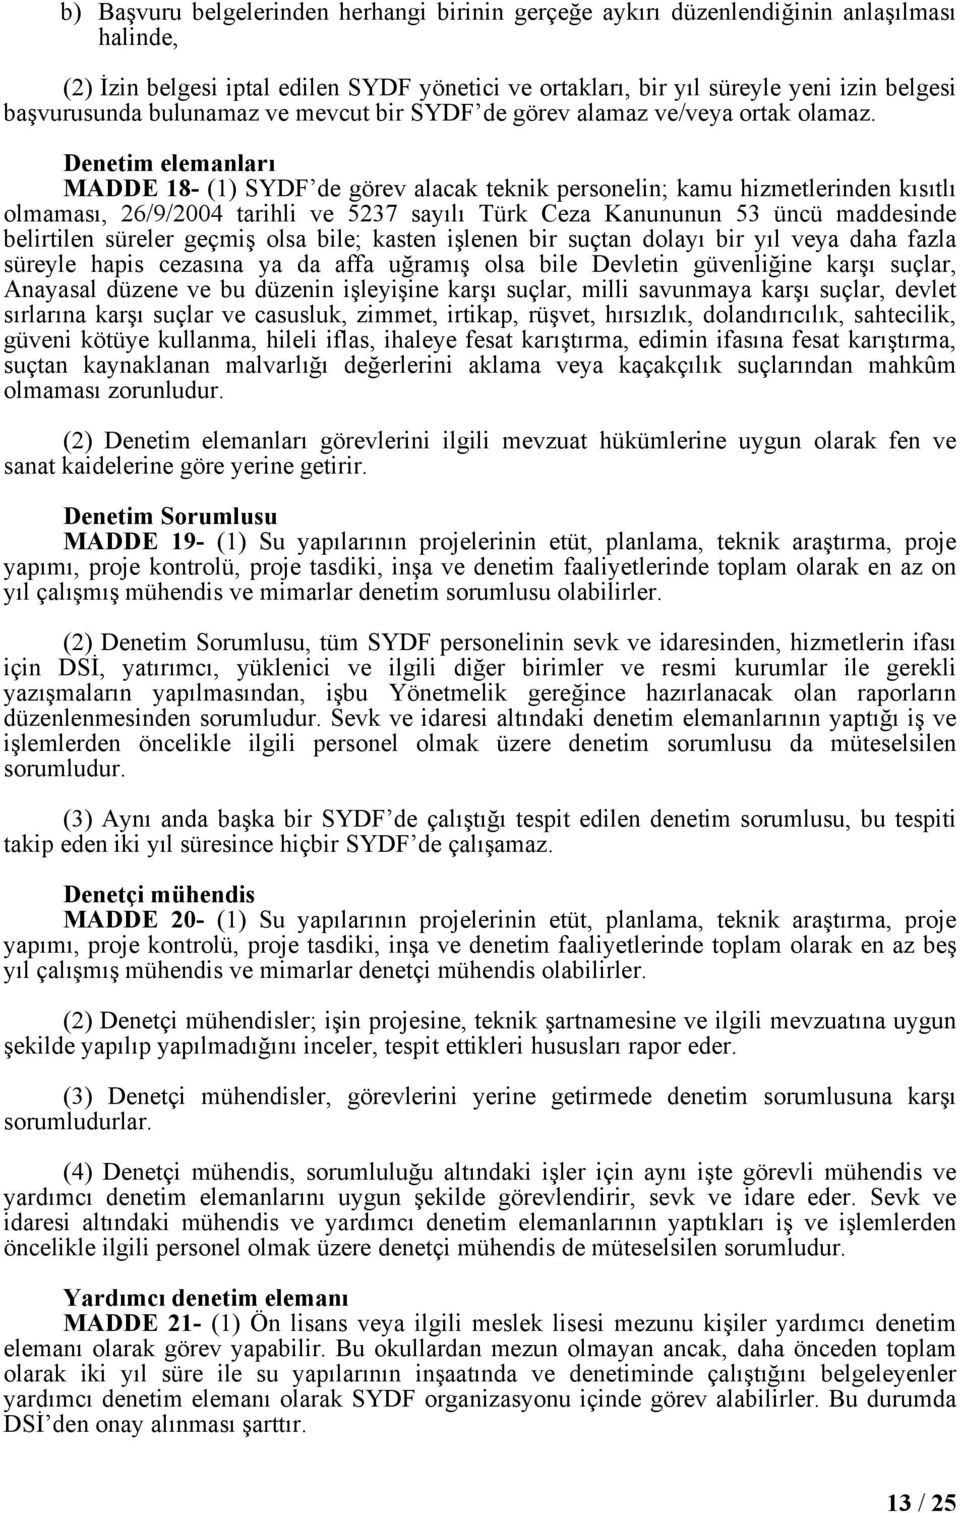 Denetim elemanları MADDE 18- (1) SYDF de görev alacak teknik personelin; kamu hizmetlerinden kısıtlı olmaması, 26/9/2004 tarihli ve 5237 sayılı Türk Ceza Kanununun 53 üncü maddesinde belirtilen